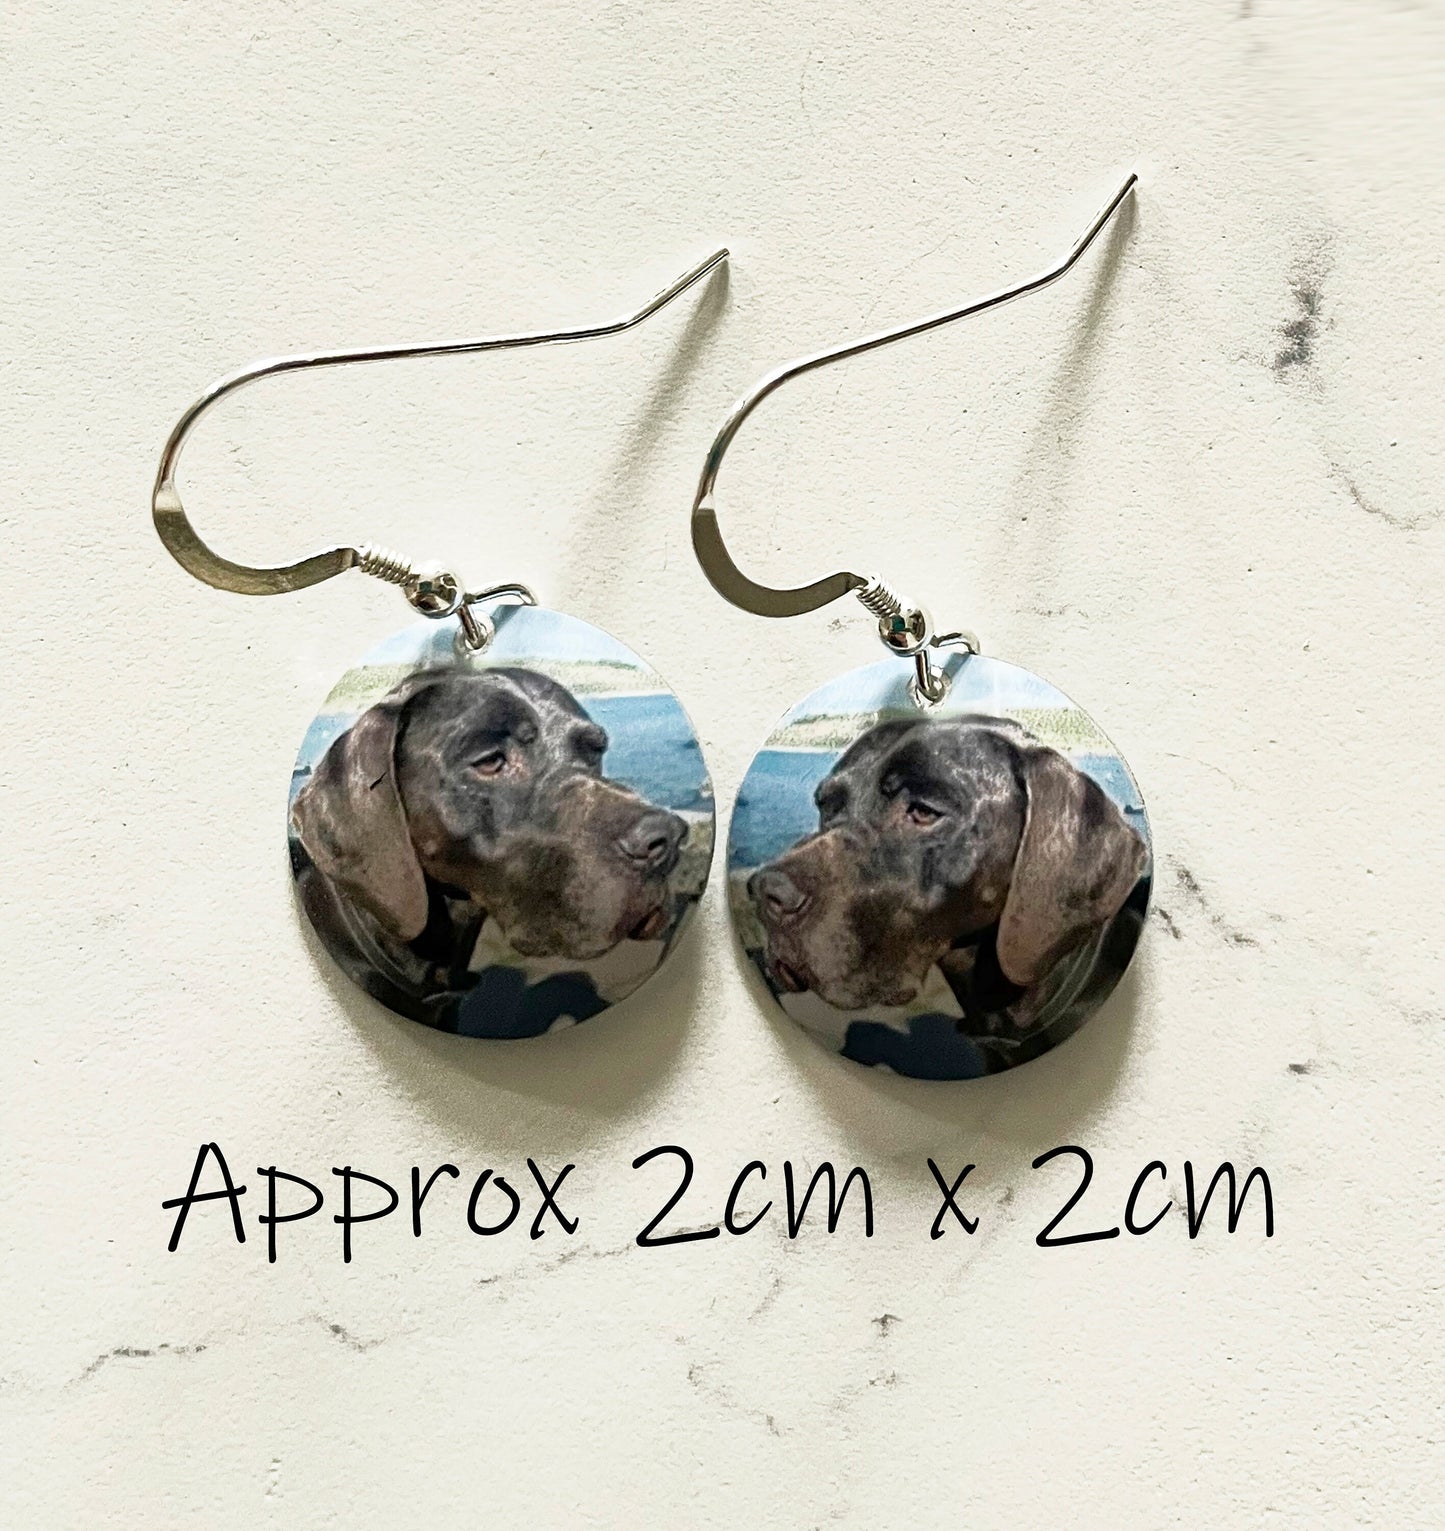 Personalized Dog Earrings - Custom Drop Earrings - Dog Earrings - Dog Danglies - Dog Gift - Gift for Dog Lovers